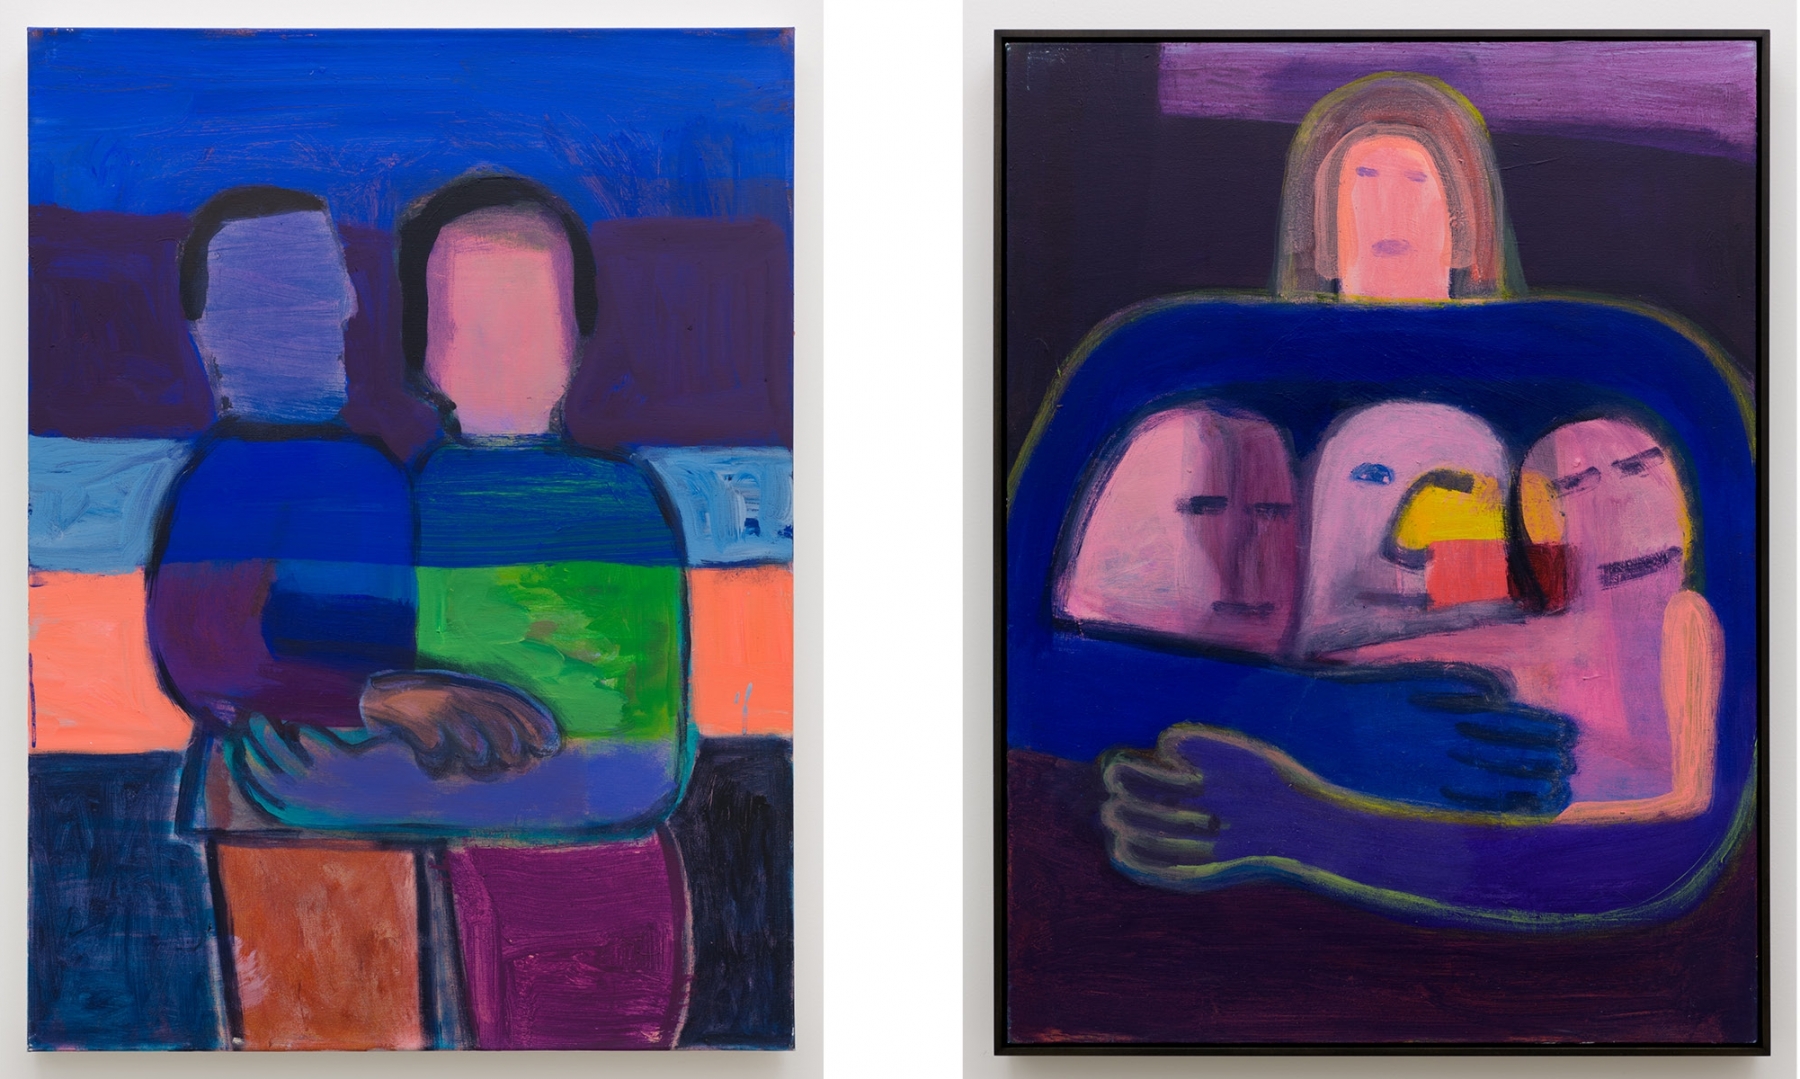 Left:&amp;nbsp;Katherine Bradford,&amp;nbsp;Close Friends, 2021;&amp;nbsp;acrylic on canvas,&amp;nbsp;40h x 30w in/&amp;nbsp;101.60h x 76.20w cm

Right:&amp;nbsp;Katherine Bradford,&amp;nbsp;Family Embrace, 2021;&amp;nbsp;acrylic on canvas,&amp;nbsp;40h x 30w in/&amp;nbsp;101.60h x 76.20w cm

Inquire